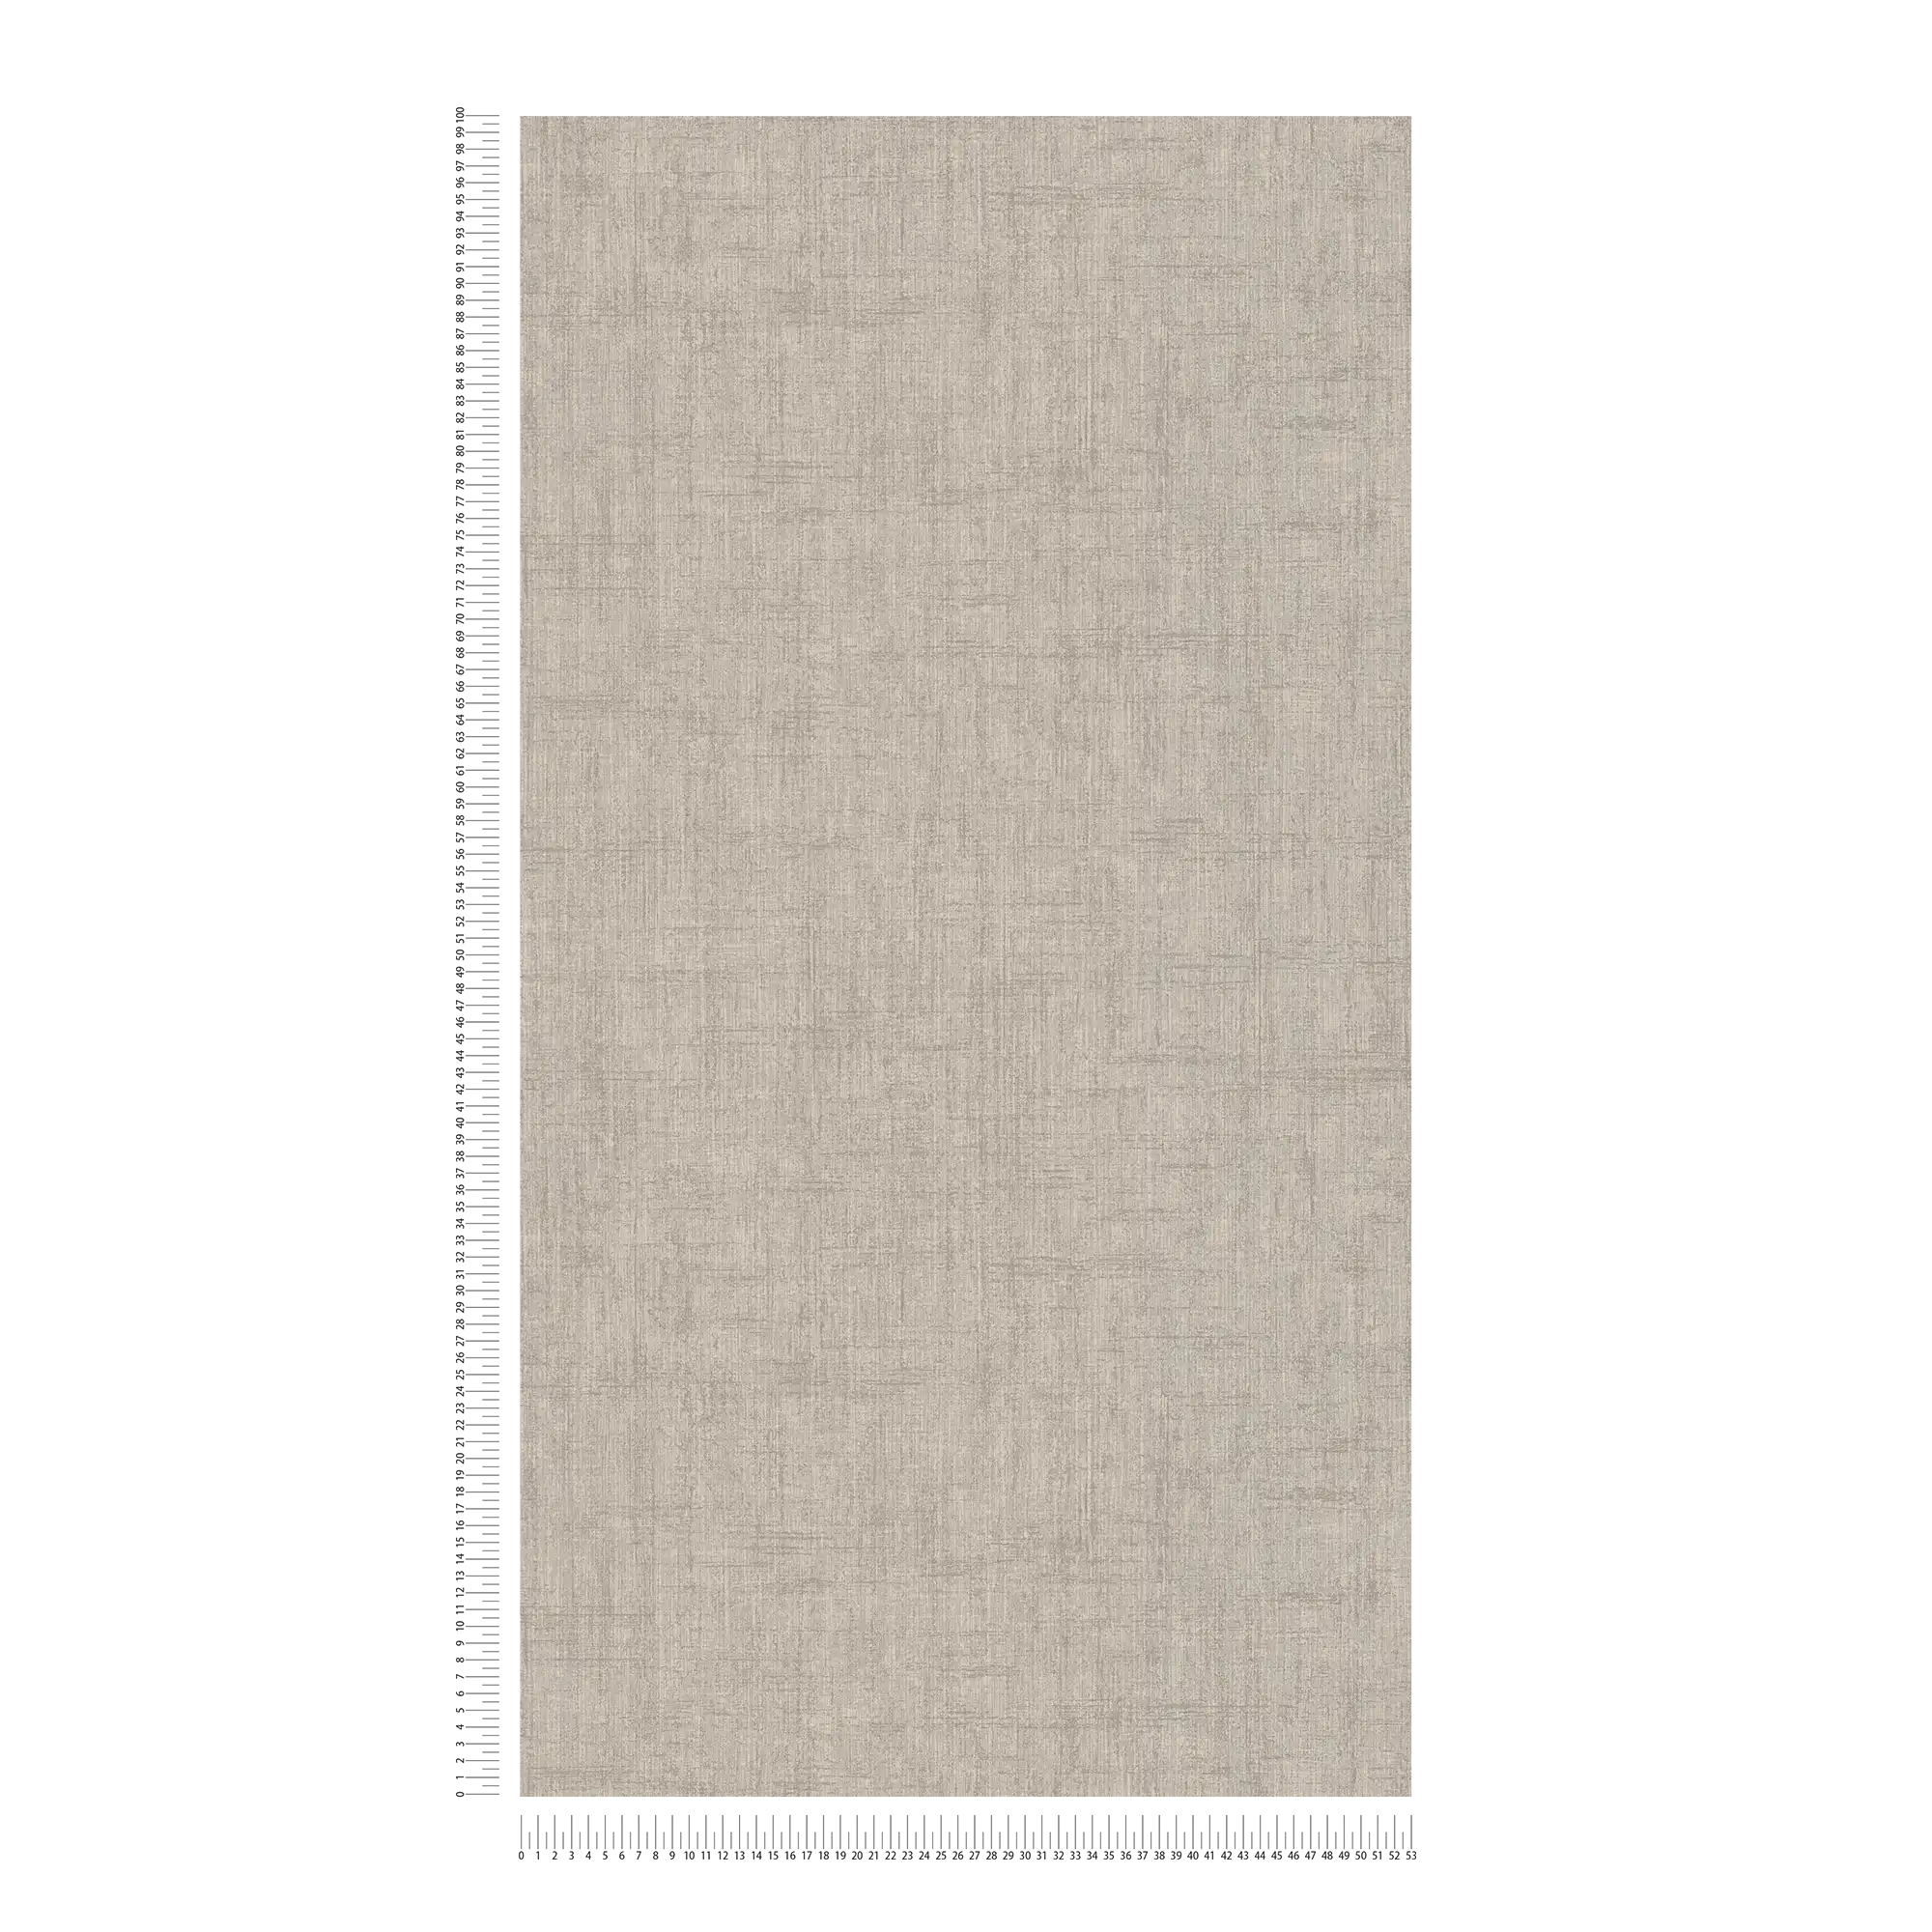             Greige wallpaper, coarse linen look - grey, beige
        